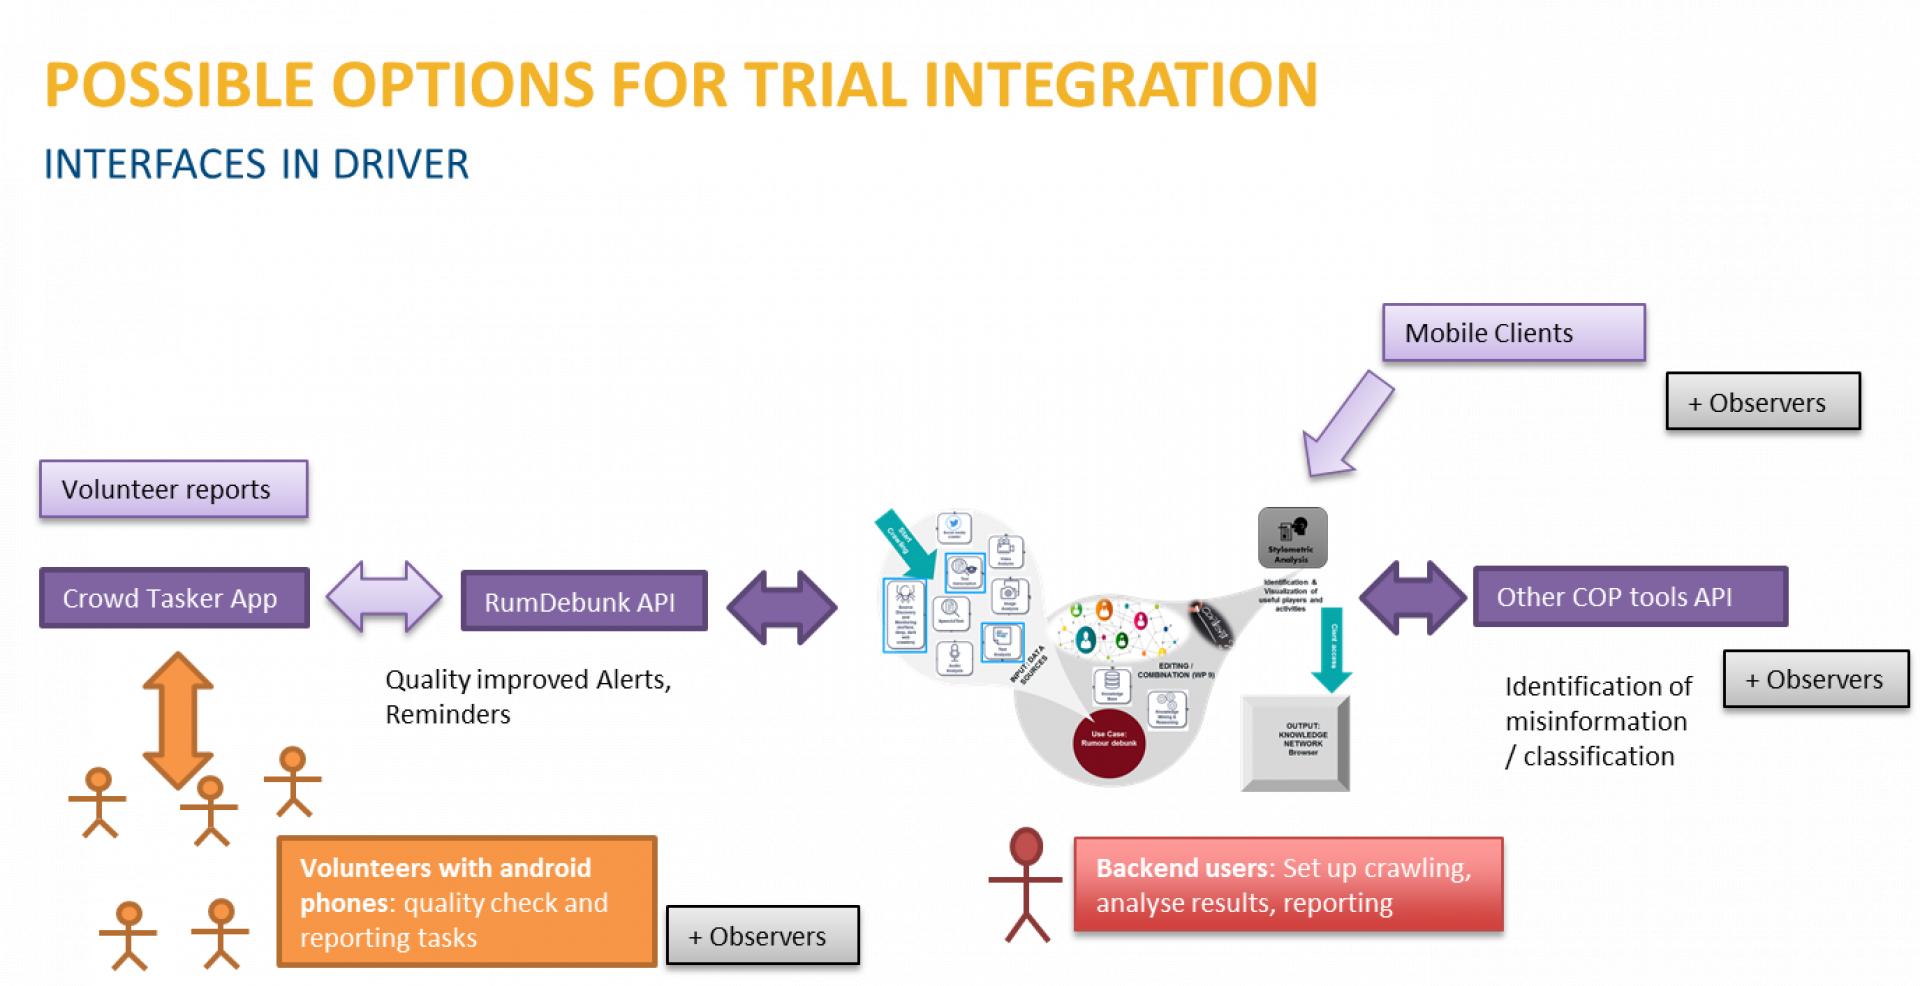 Possibili opzioni per l'integrazione nel trial